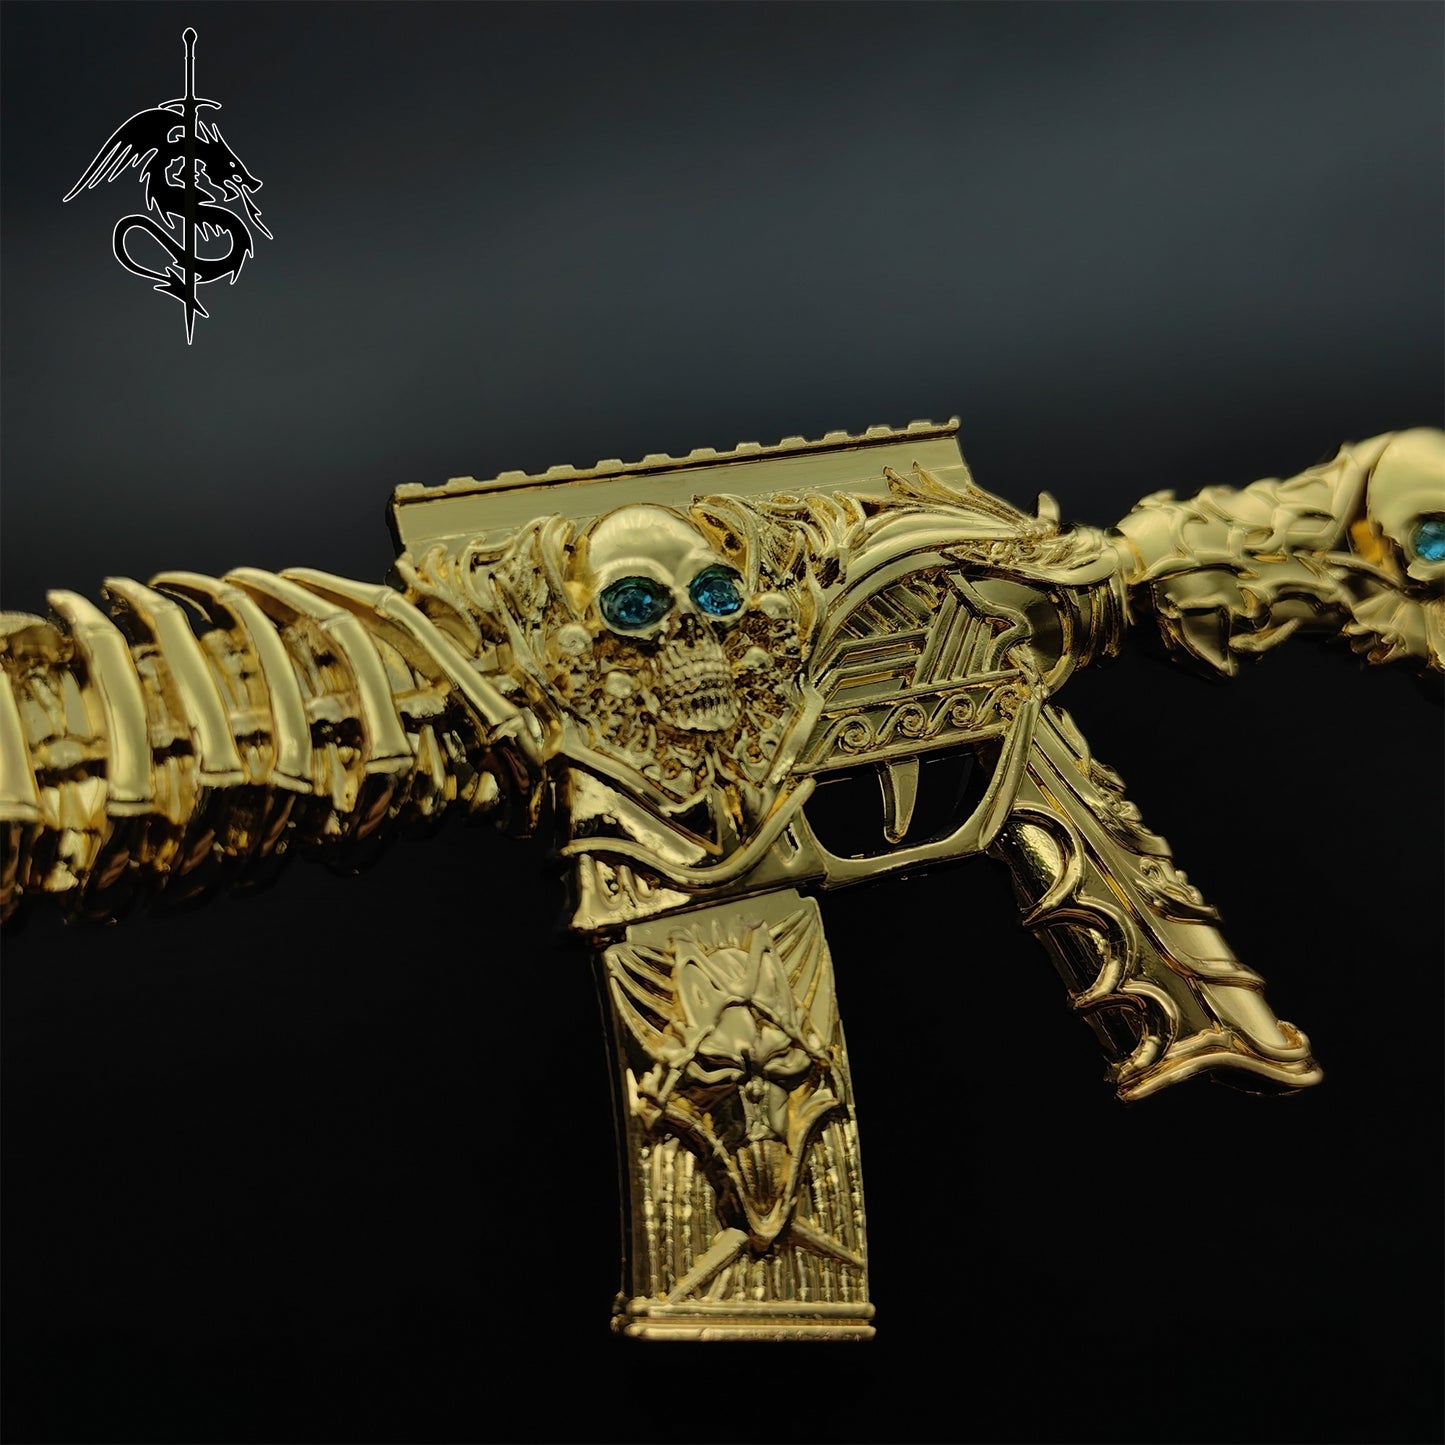 HK416 Golden Skull Miniature Gun Model